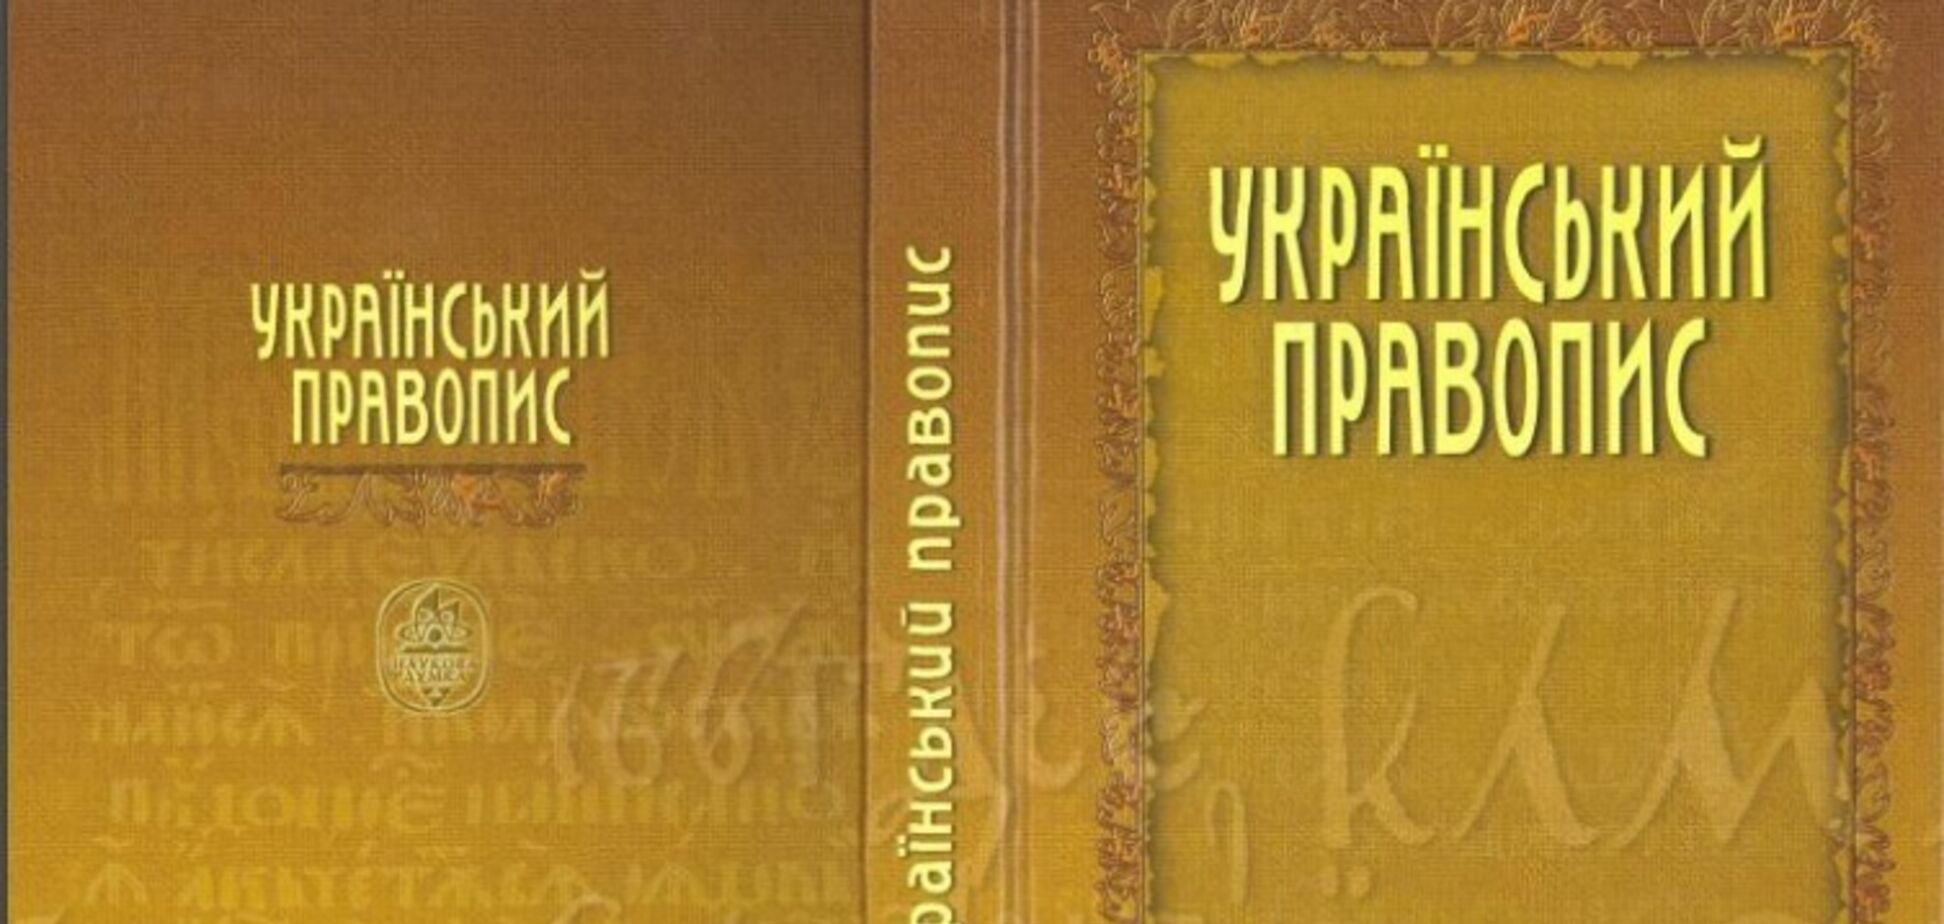 Хорошо забытое старое, или Новый украинский язык: только слова